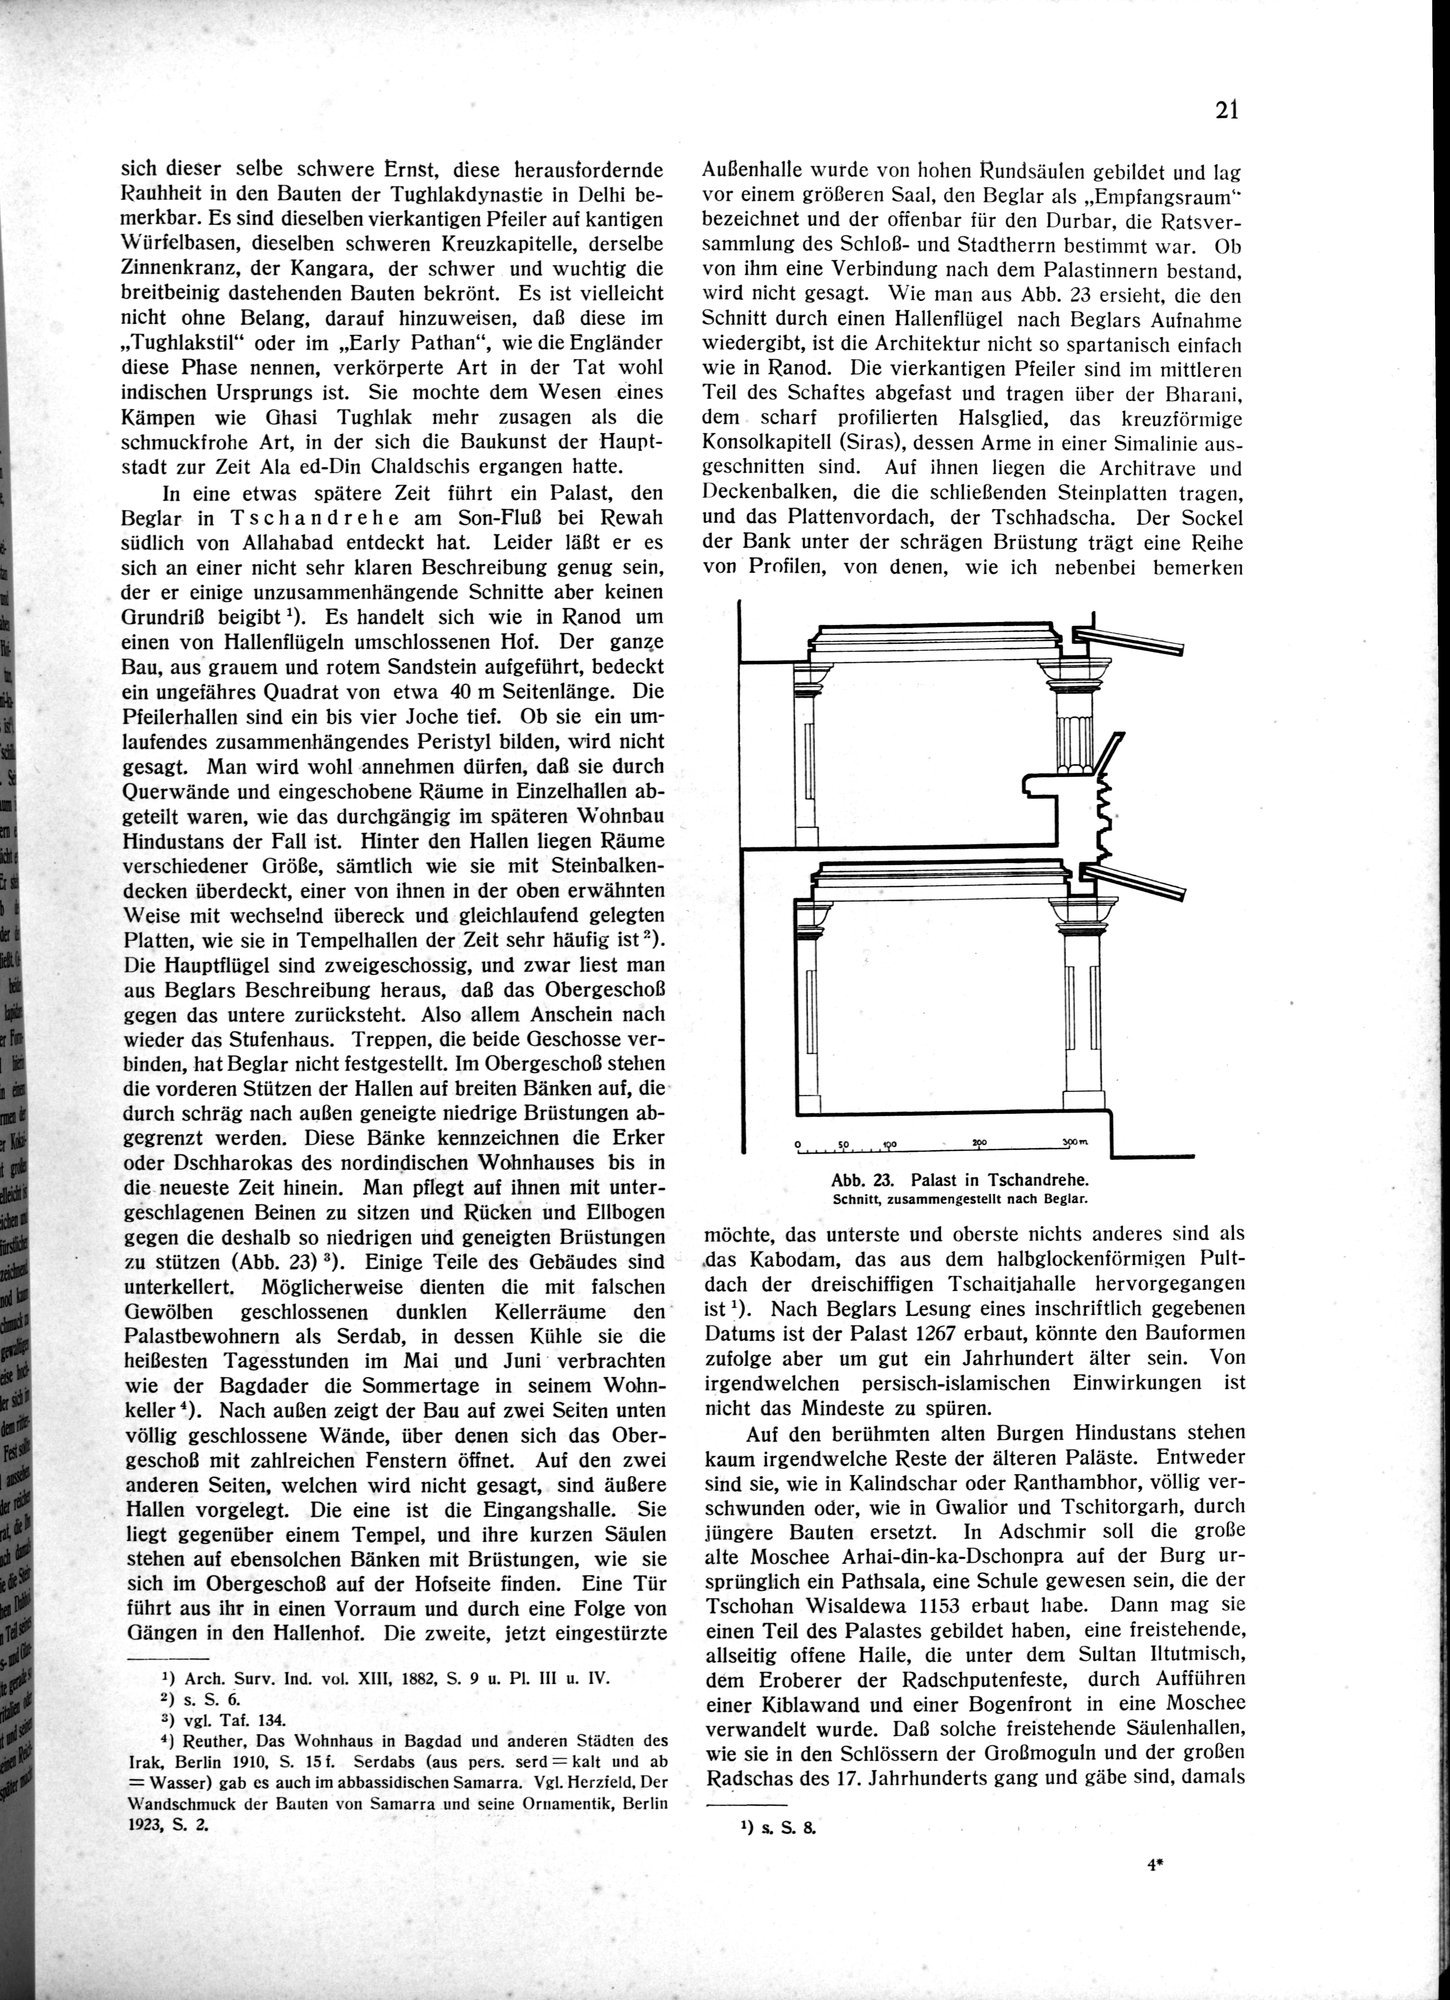 Indische Palaste und Wohnhauser : vol.1 / Page 31 (Grayscale High Resolution Image)